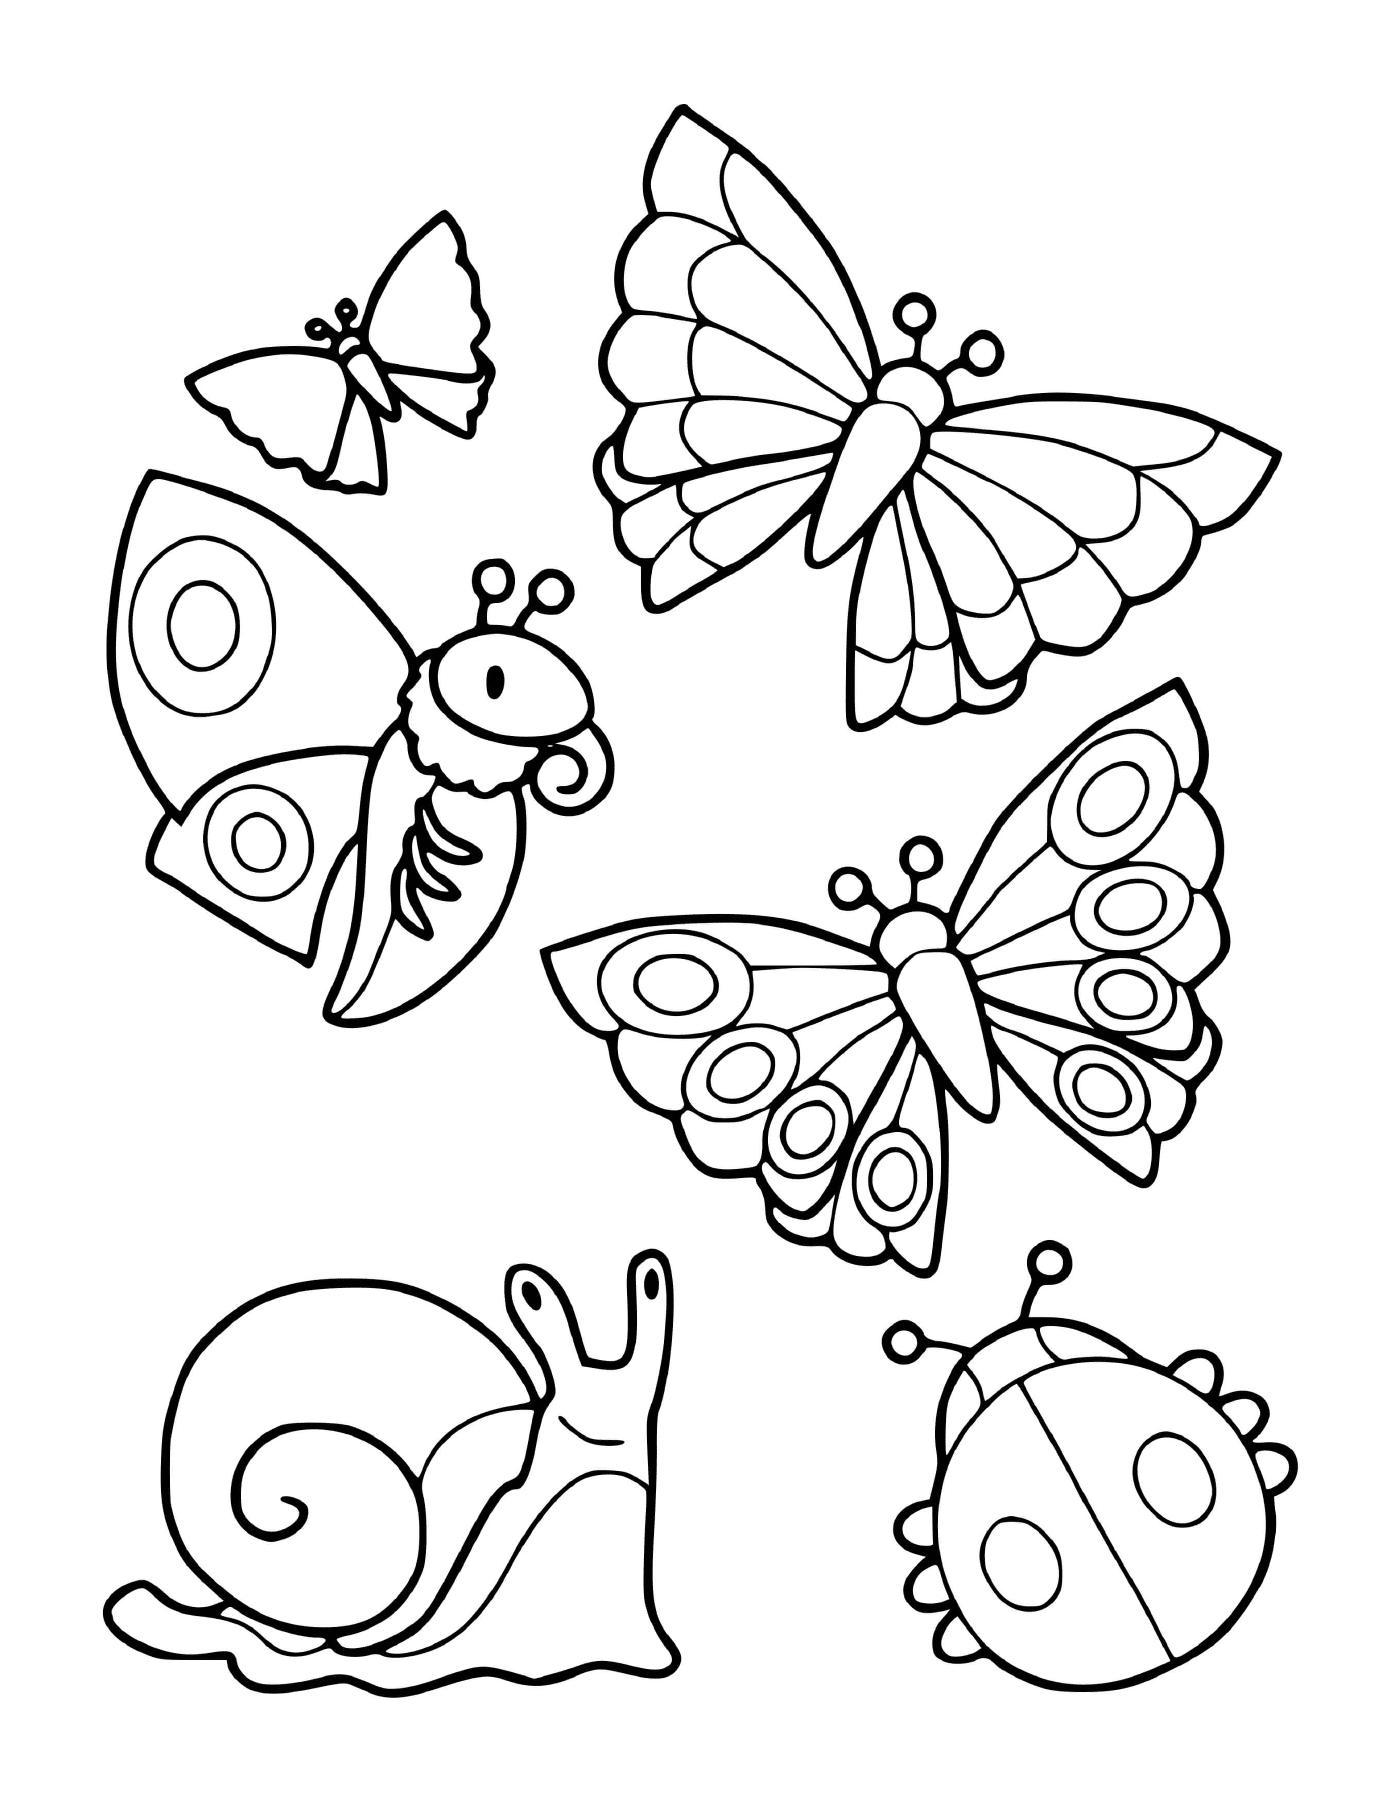  مجموعة من الحشرات بما في ذلك الفراشات والمحلل 